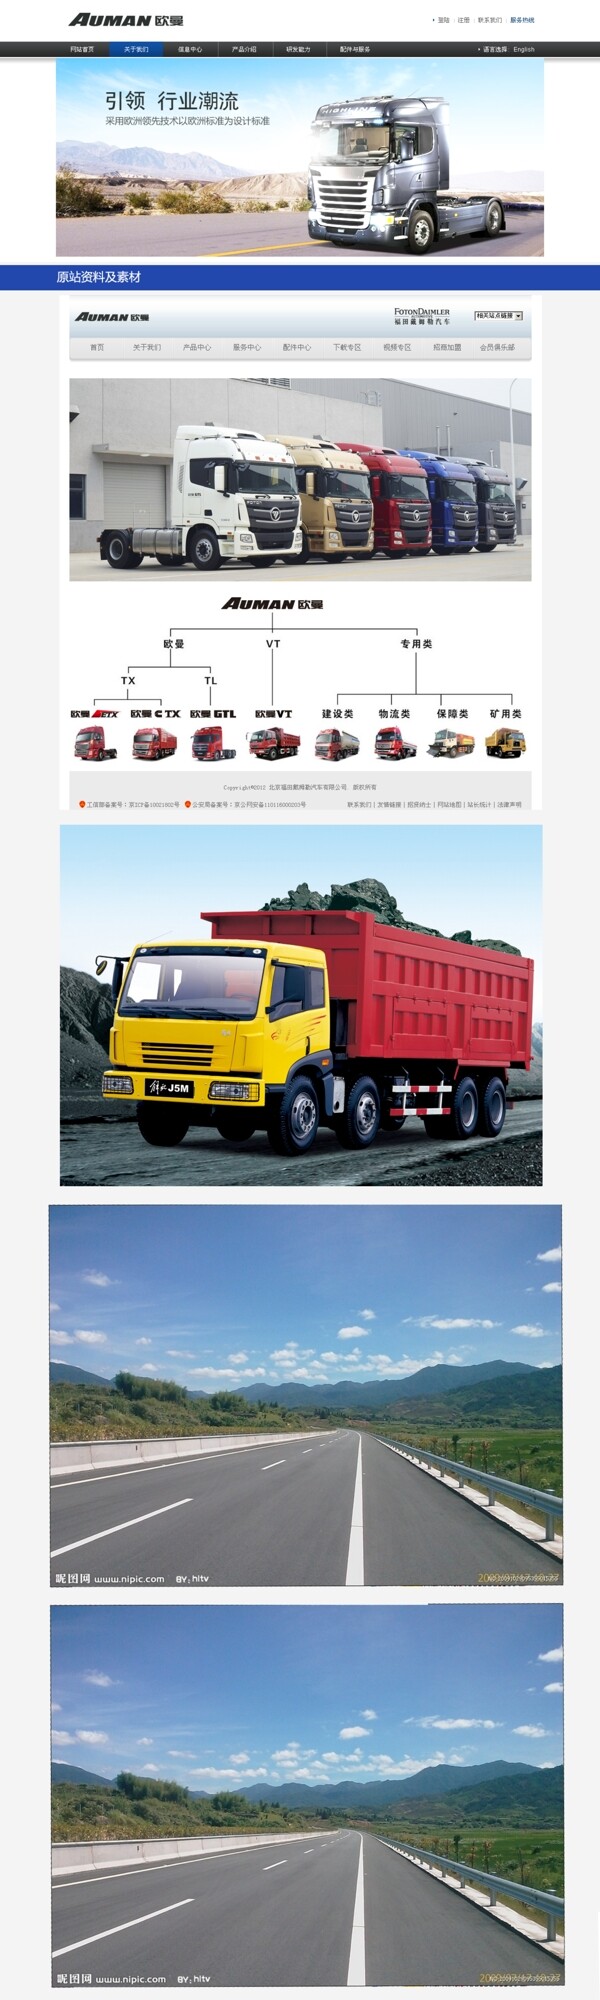 卡车网页图片